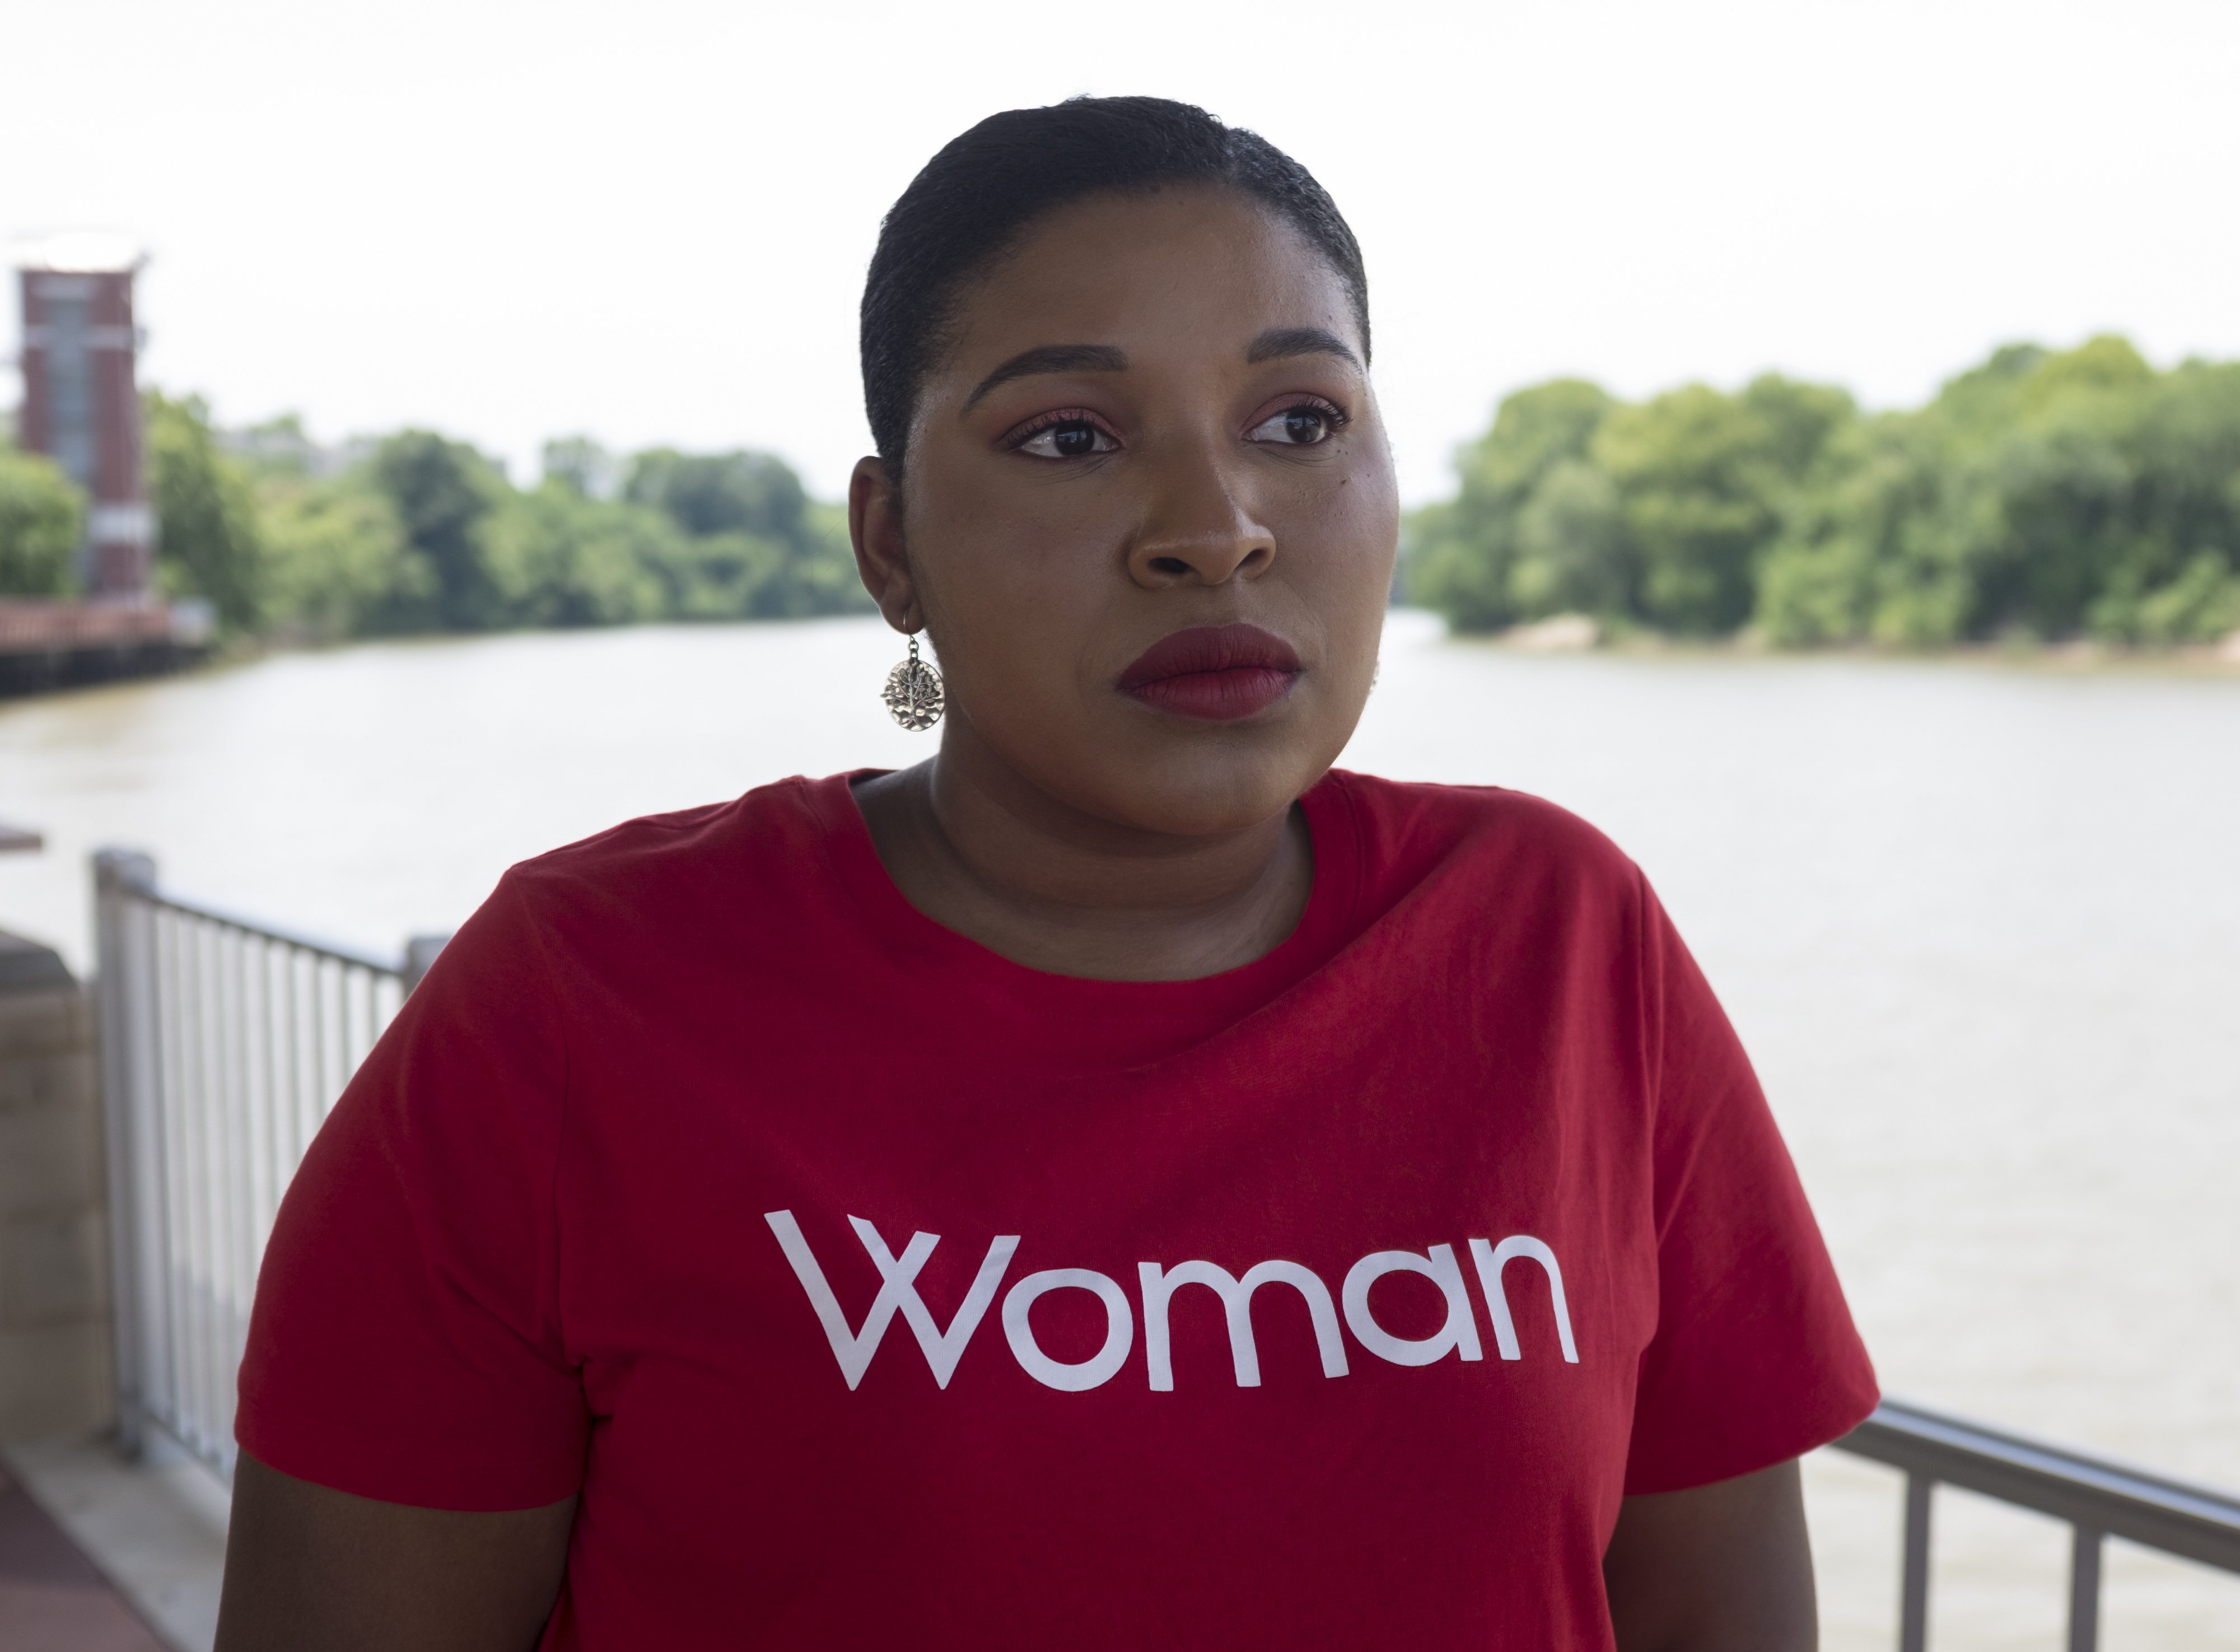 De no haber podido abortar me habría matado, dice una sobreviviente de violación en Alabama